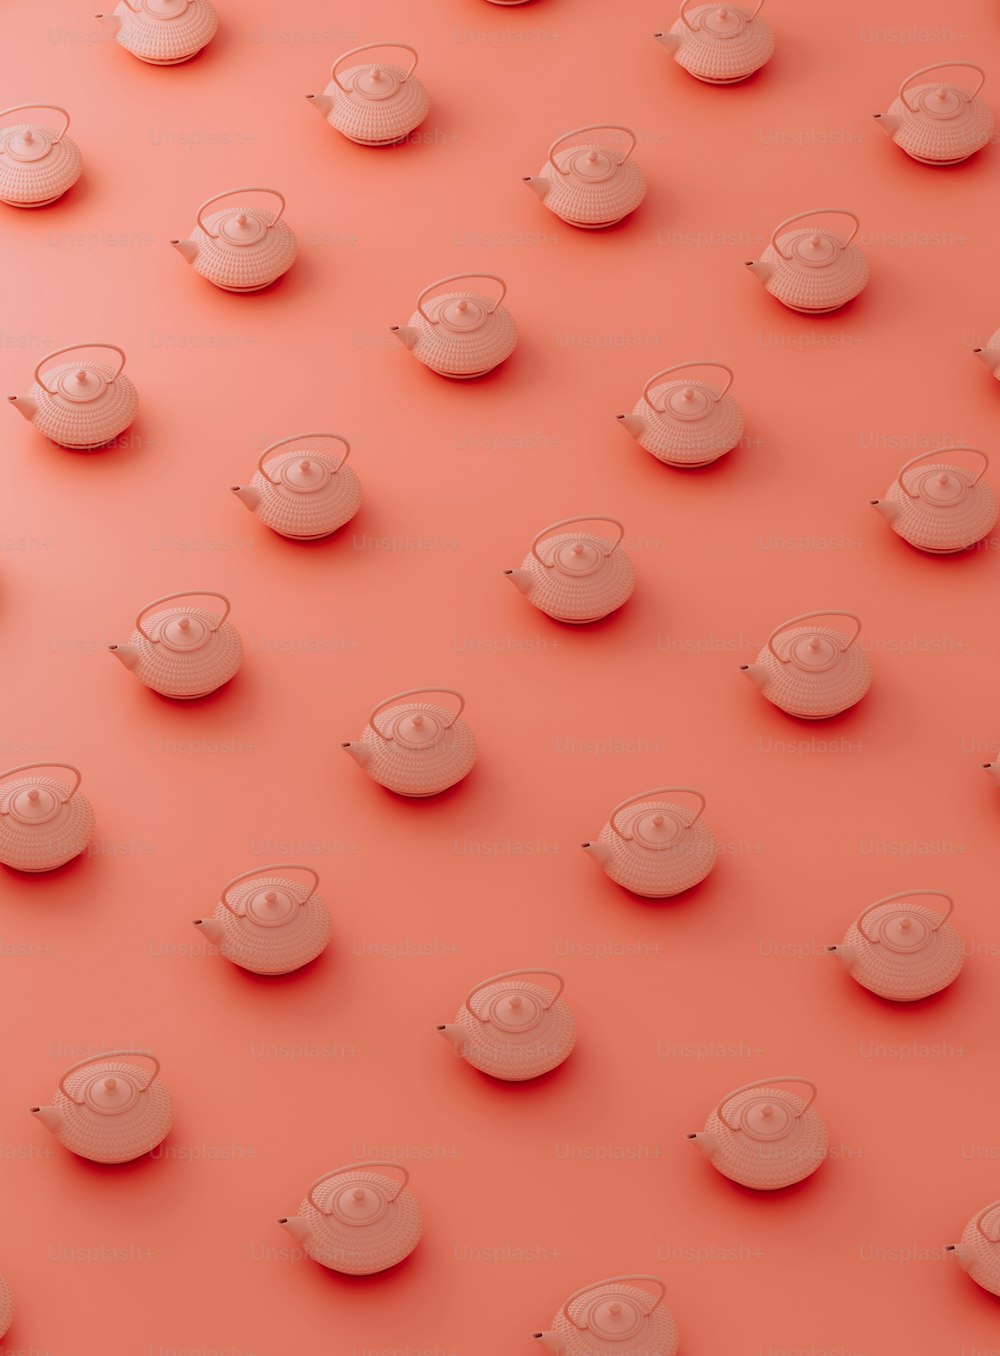 um grupo de xícaras e pires em uma superfície rosa